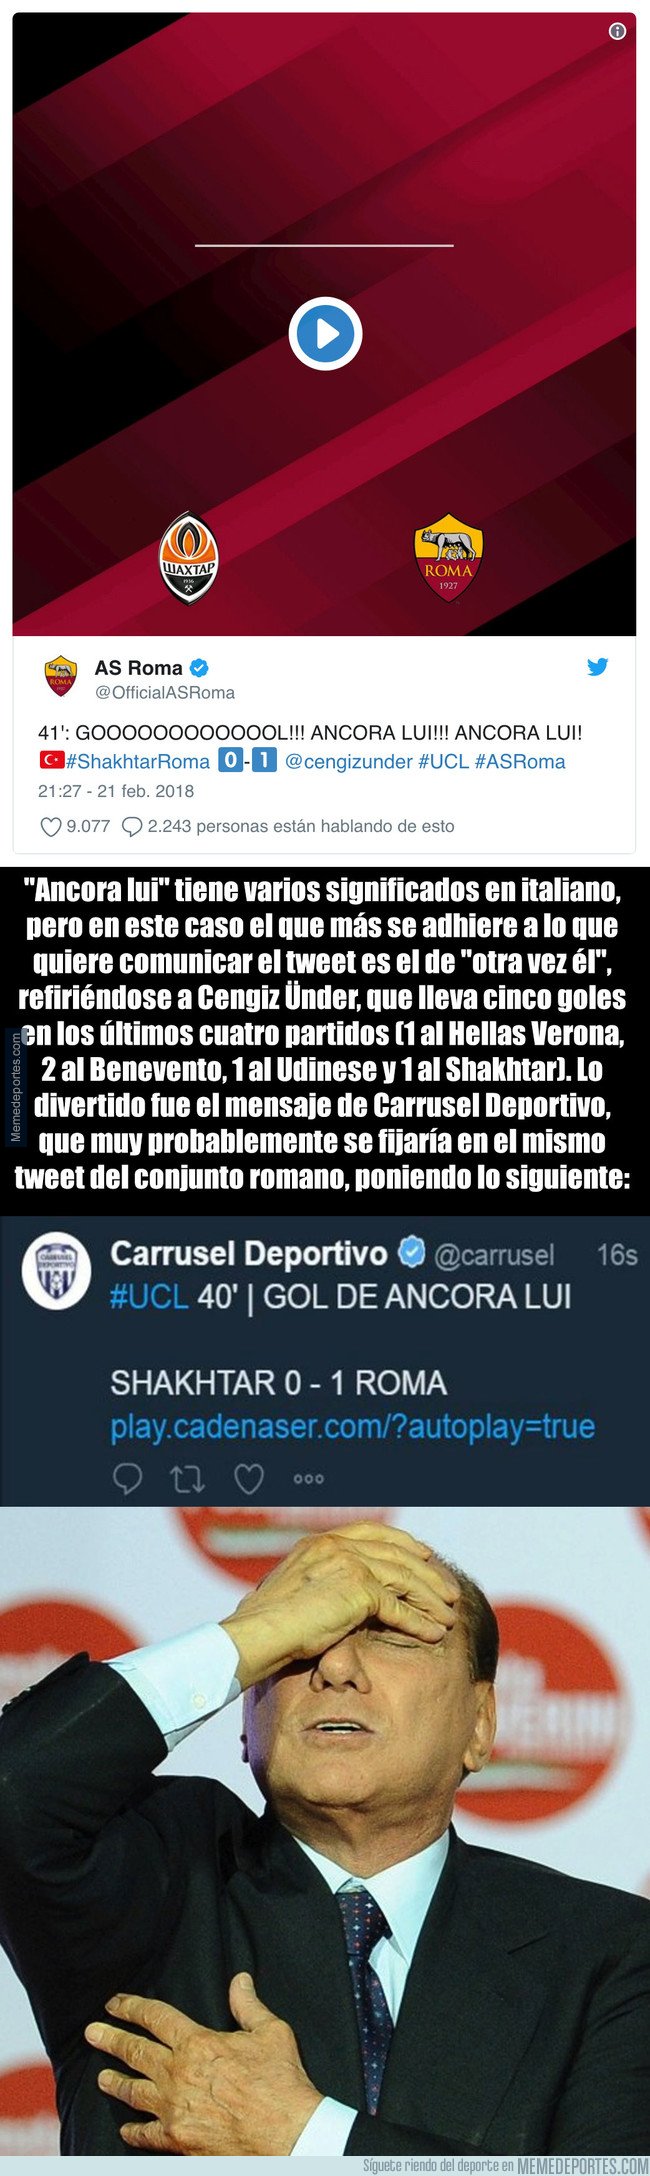 1022830 - El divertido error de Carrusel Deportivo con un jugador de la Roma